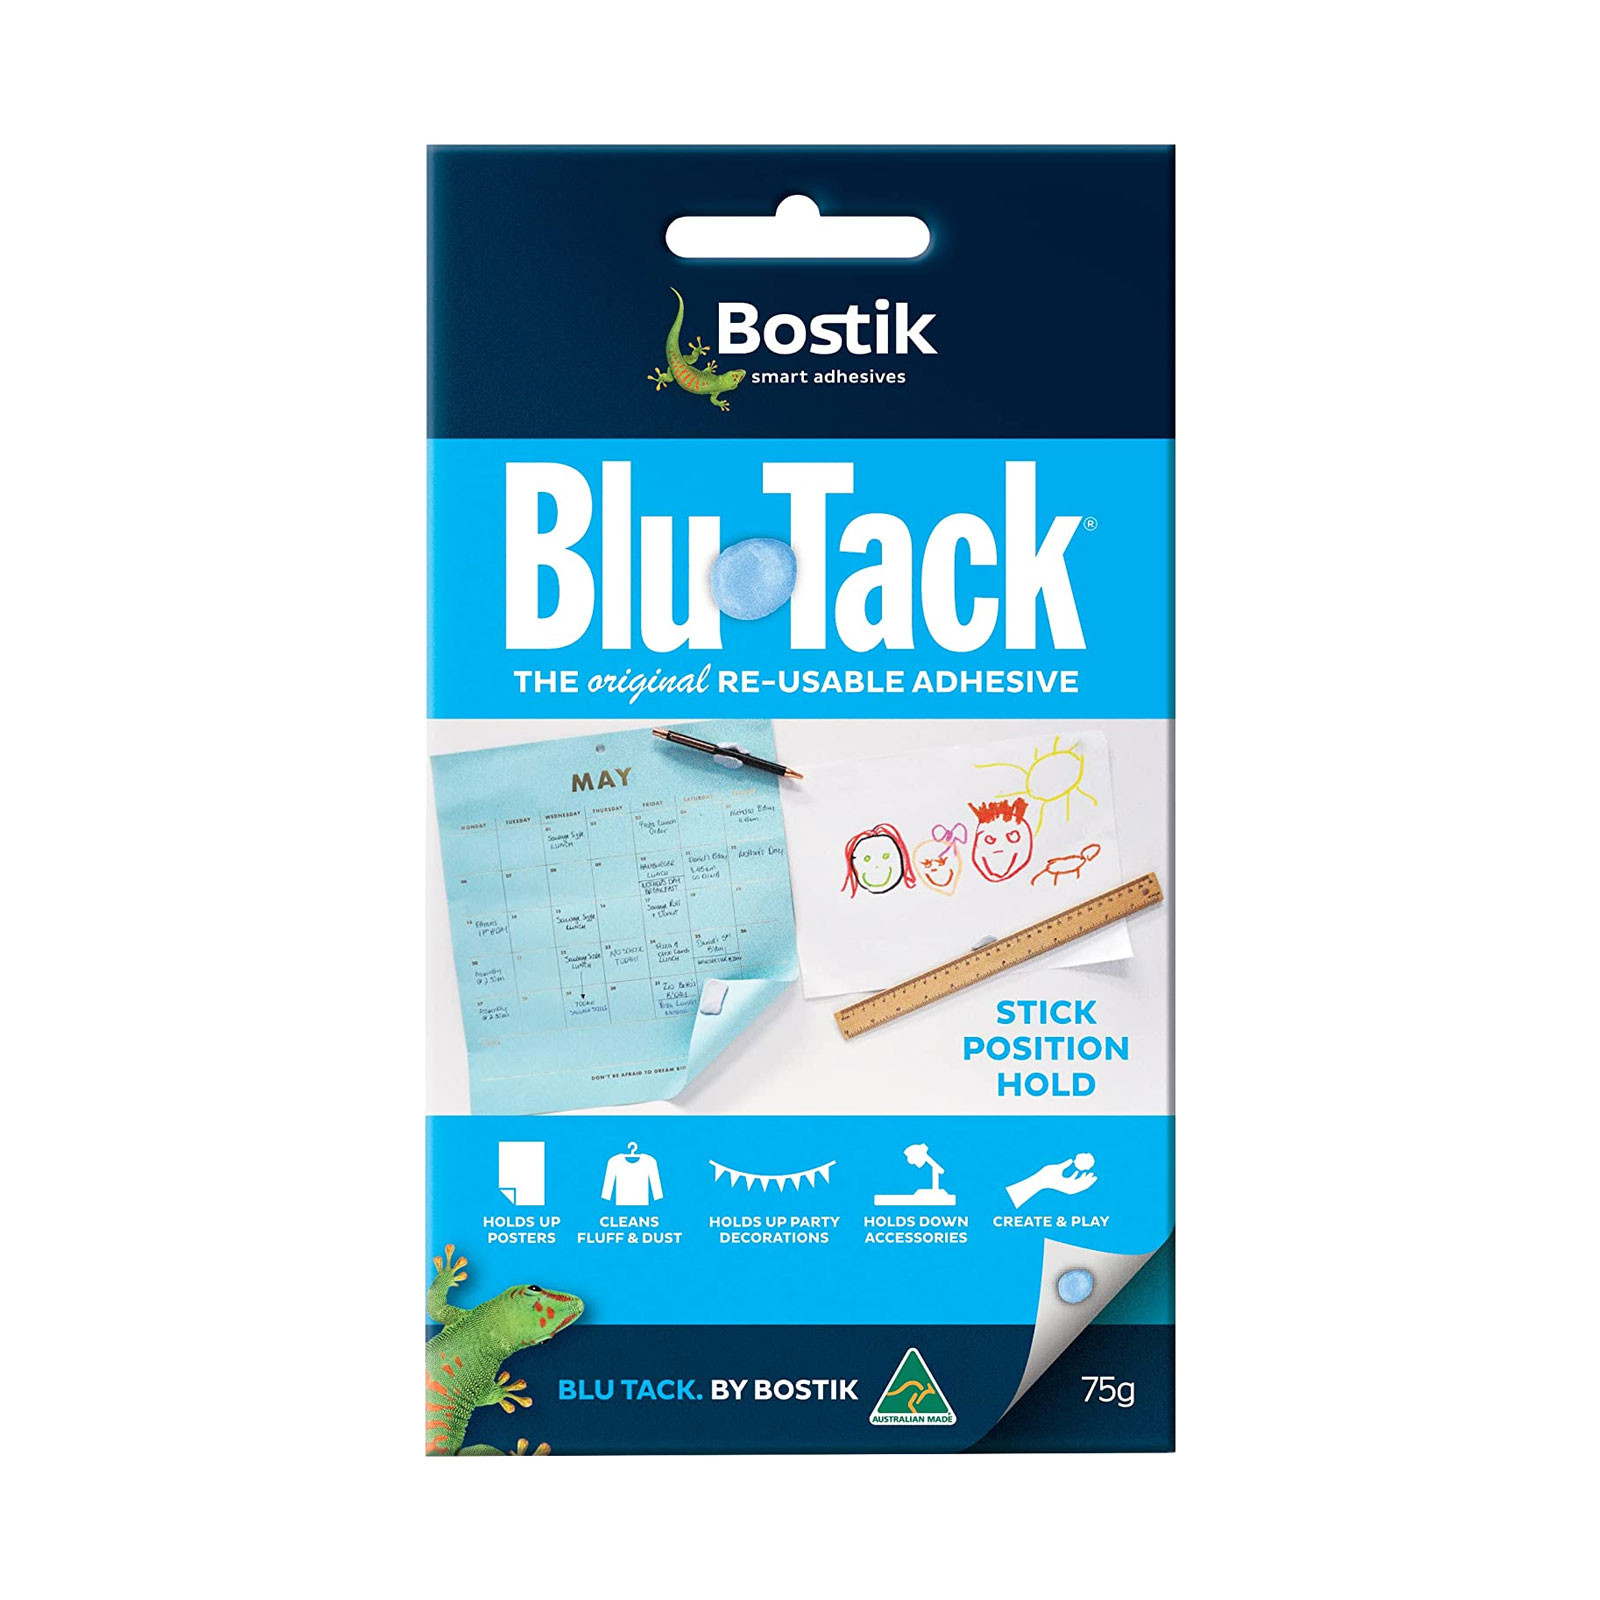 Bostik Blu Tack® Original, Buy Blu Tack®